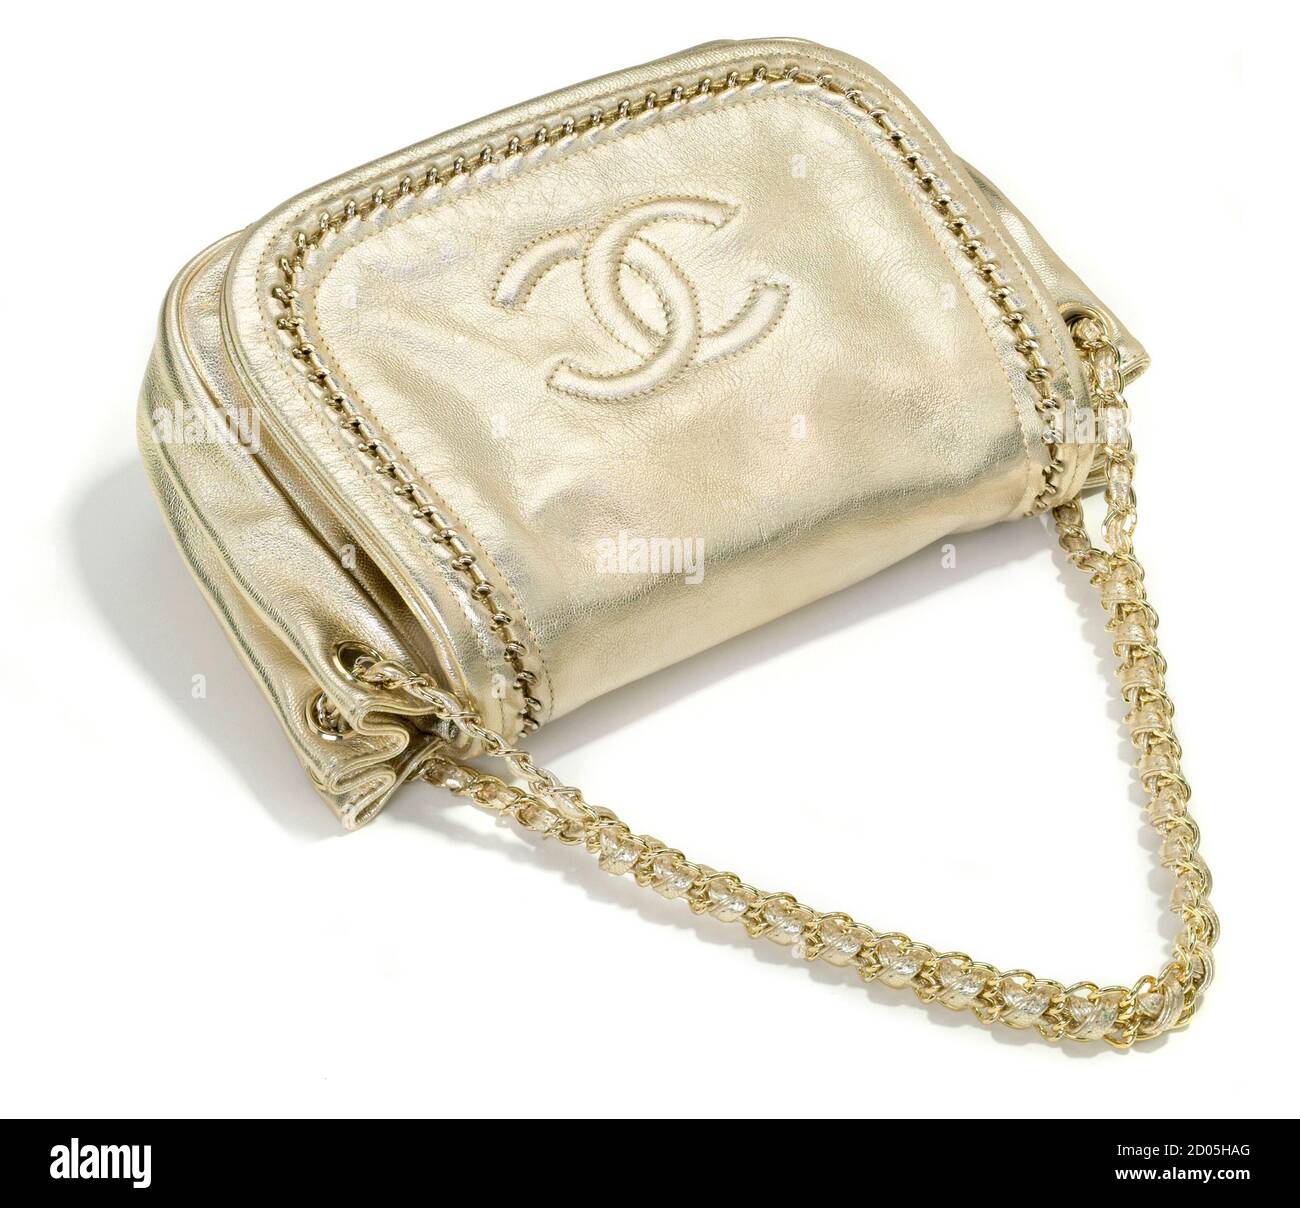 Sac à main en or Chanel avec poignée de maillon de chaîne photographiée sur un arrière-plan blanc Banque D'Images